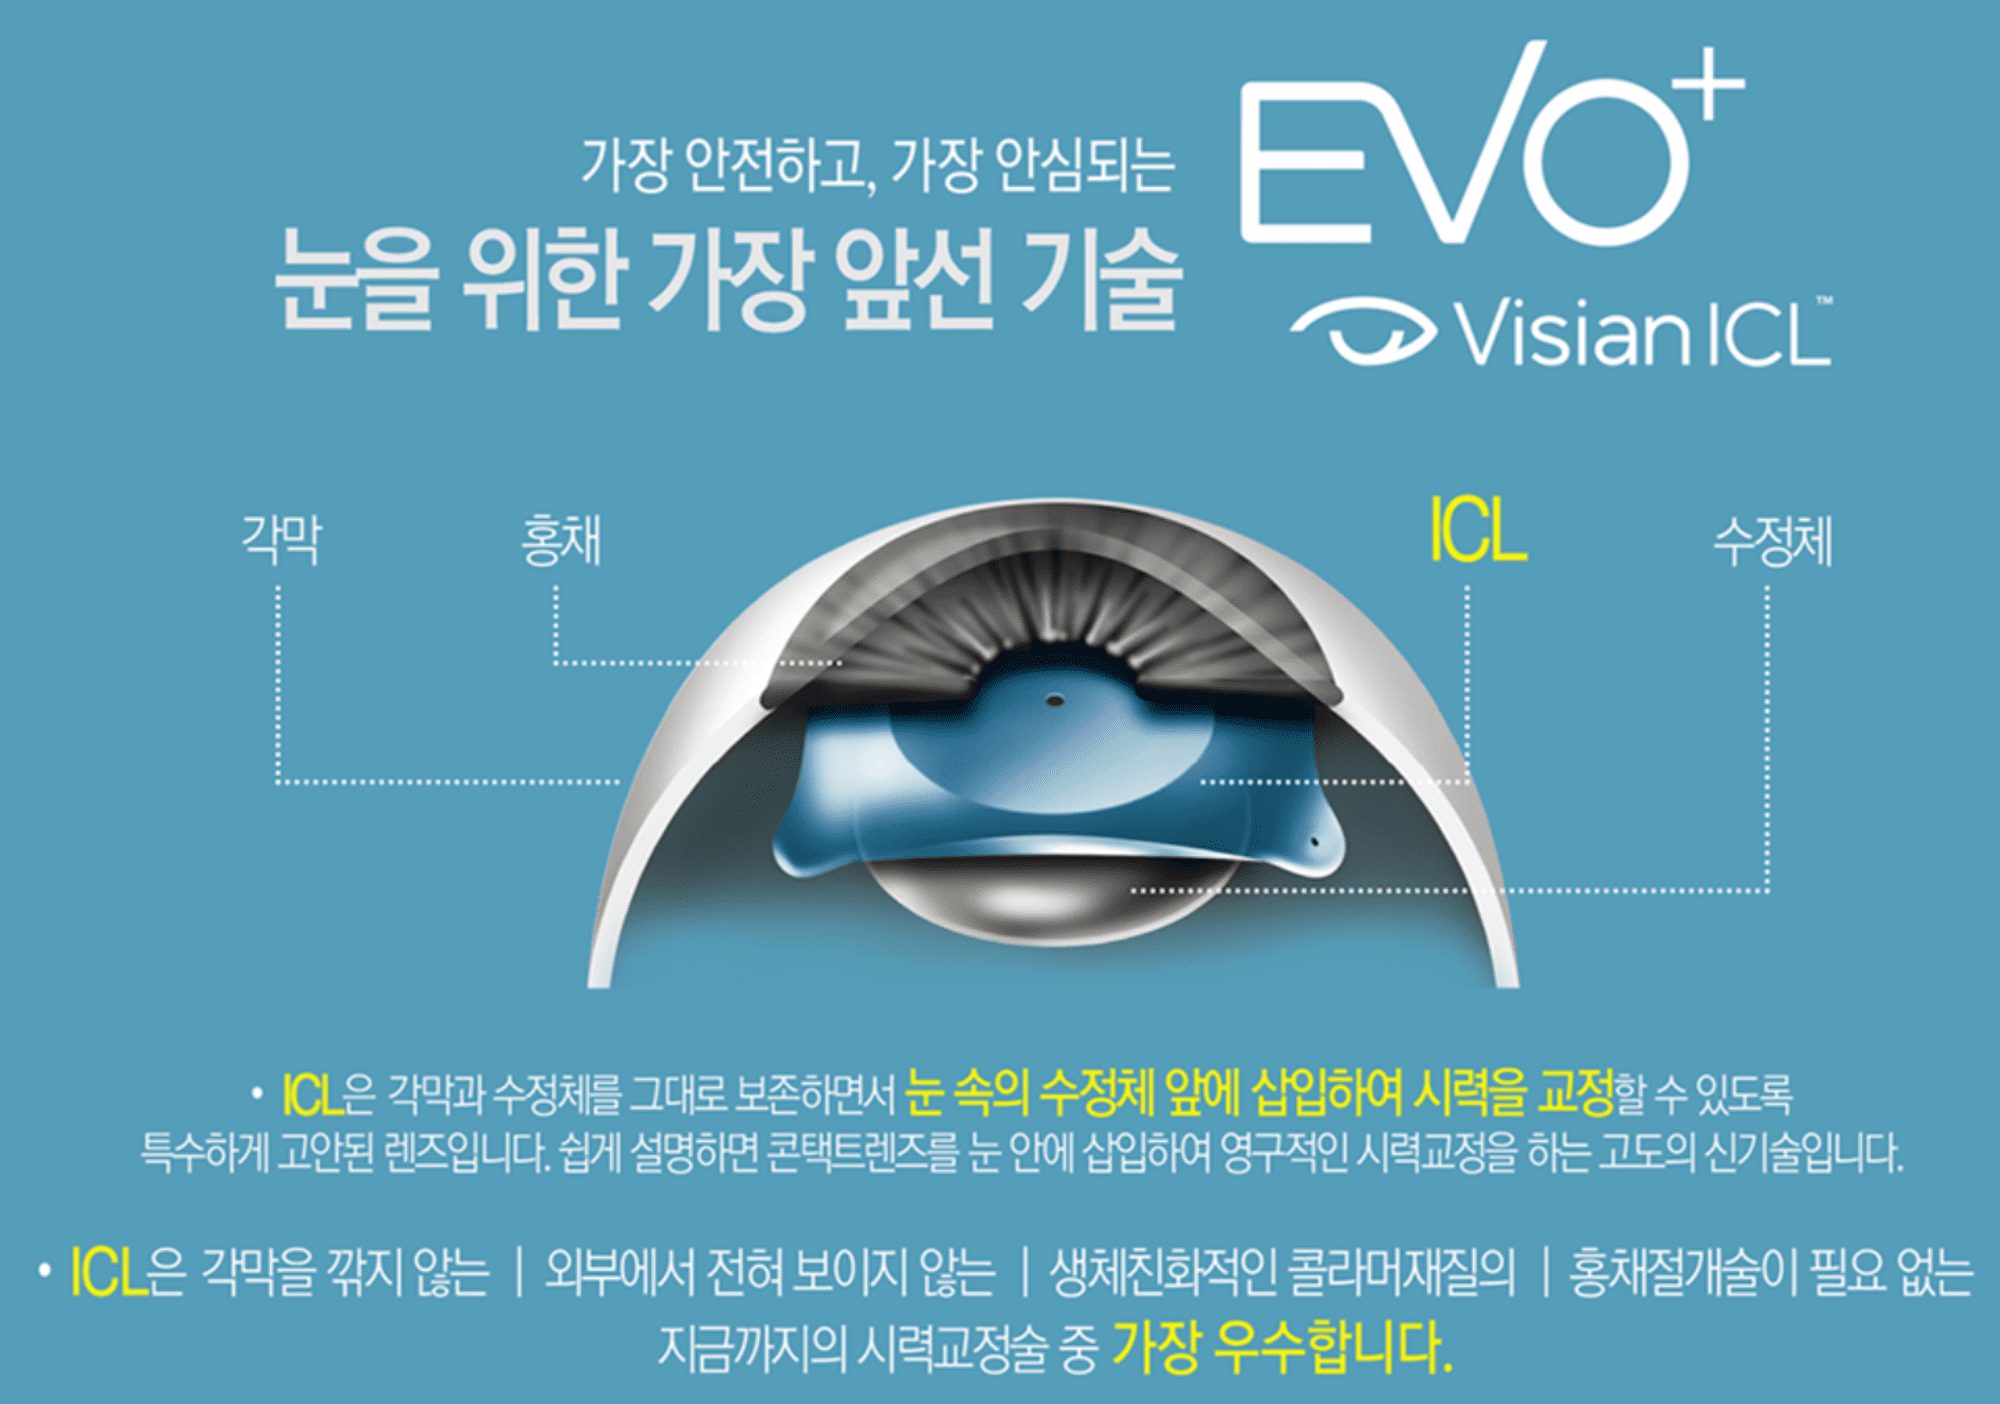 가장 안전하고, 가장 안심되는 눈을 위한 가장 앞선 기술 EVO+